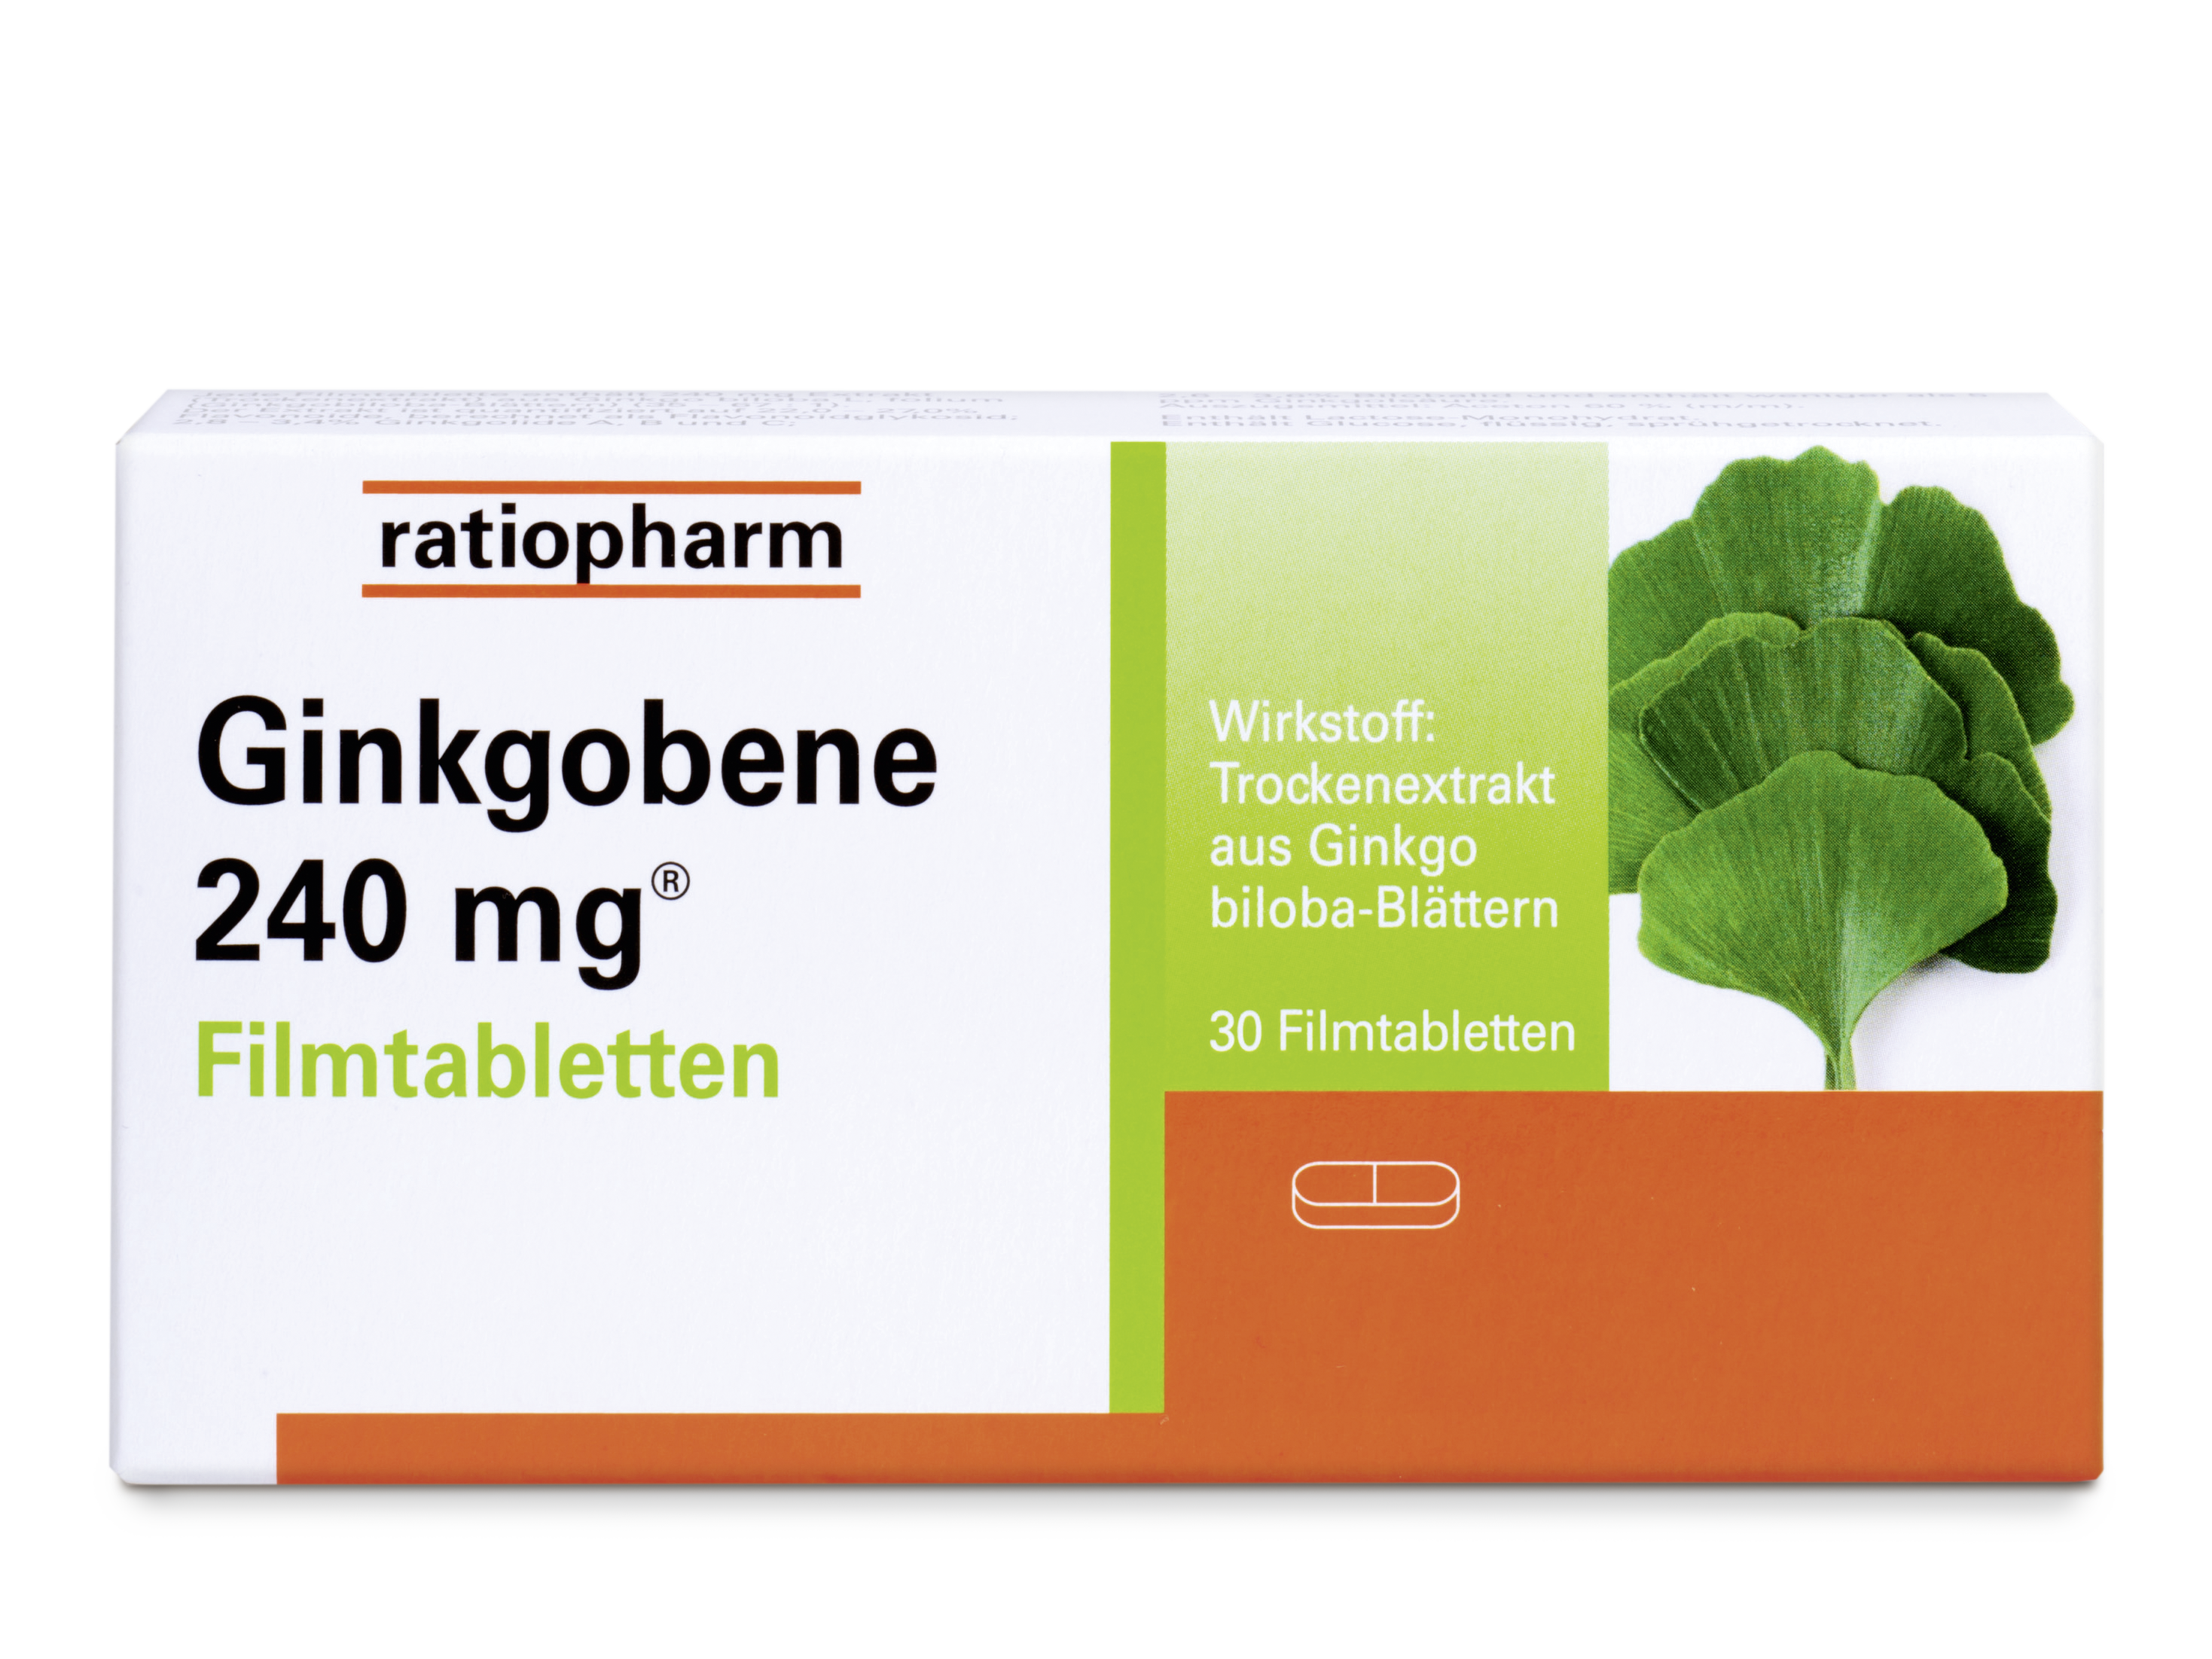 Ginkgobene 240 mg® Filmtabletten